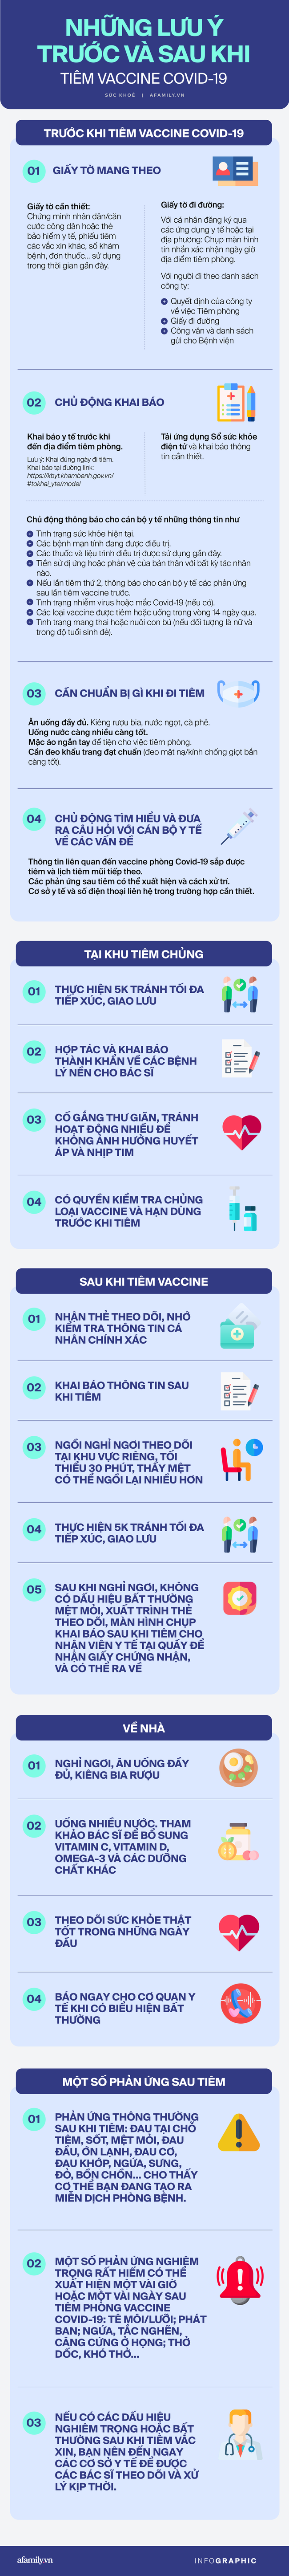 Trước, trong và sau khi tiêm vaccine COVID-19, người dân cần làm gì để việc tiêm chủng thuận lợi và an toàn? - Ảnh 1.